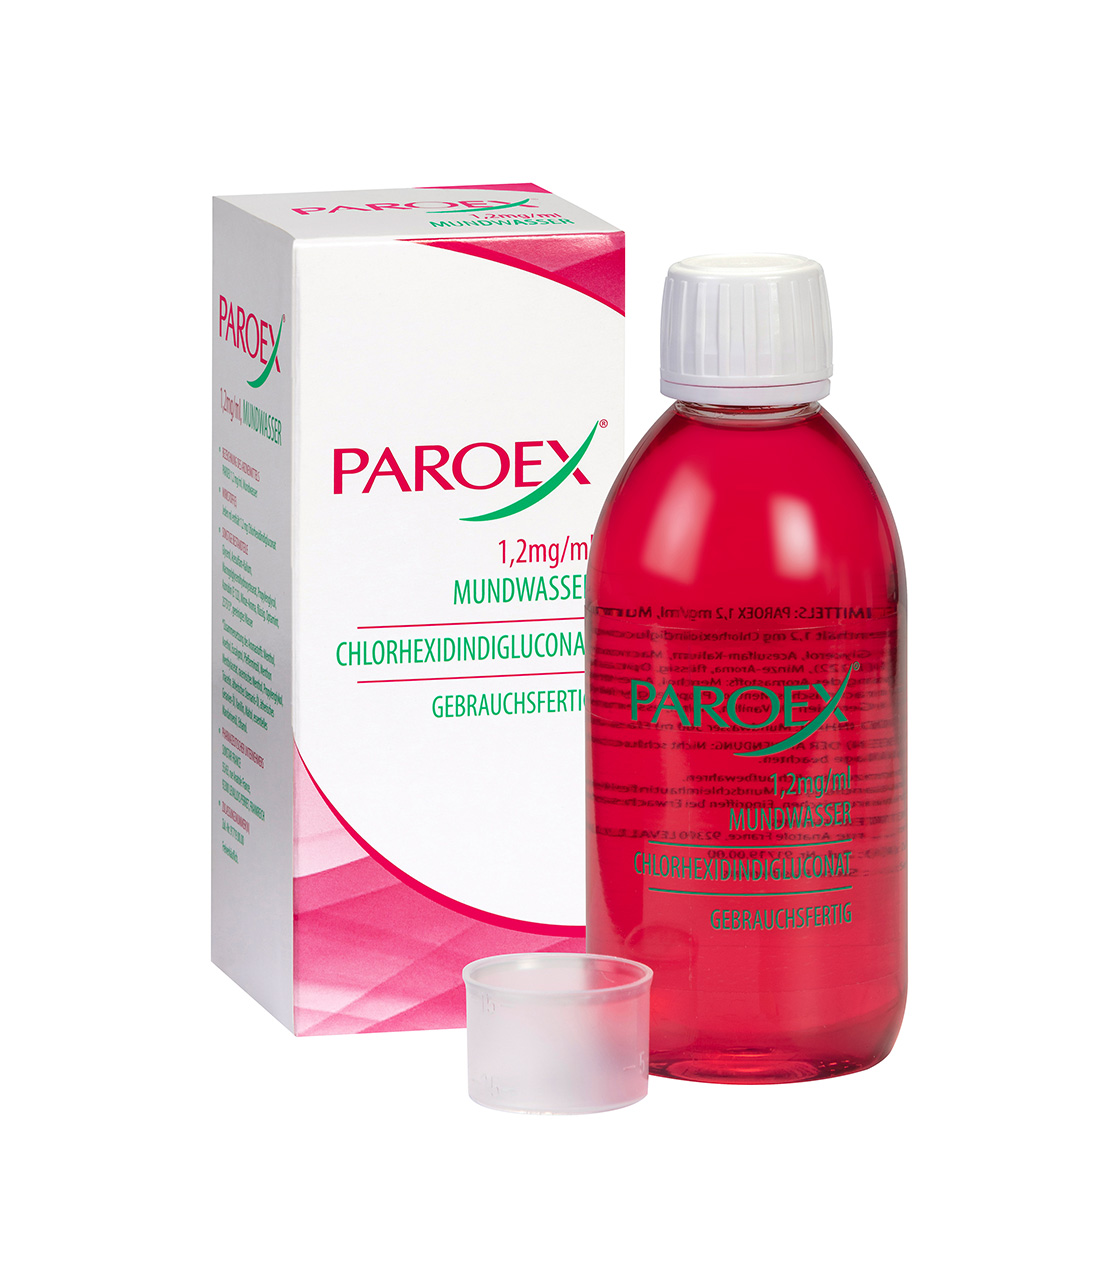  Paroex 1,2 mg/ml Mundwasser. Bild: Sunstar